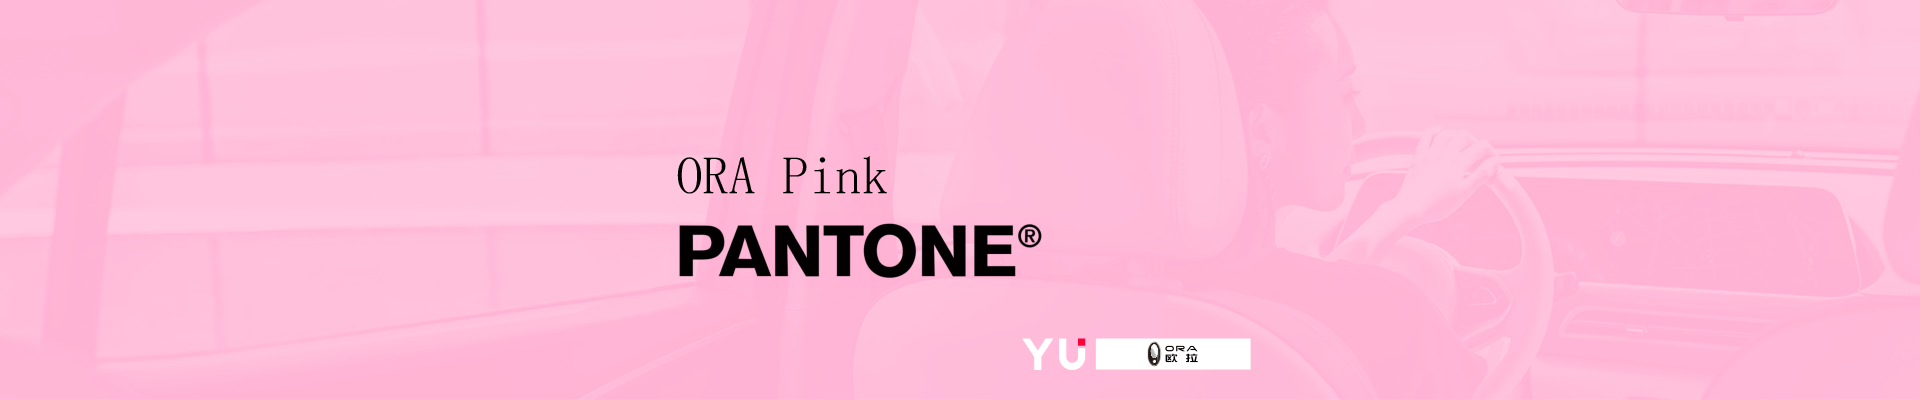 长城欧拉联合色彩专家PANTONE发布最新品牌色